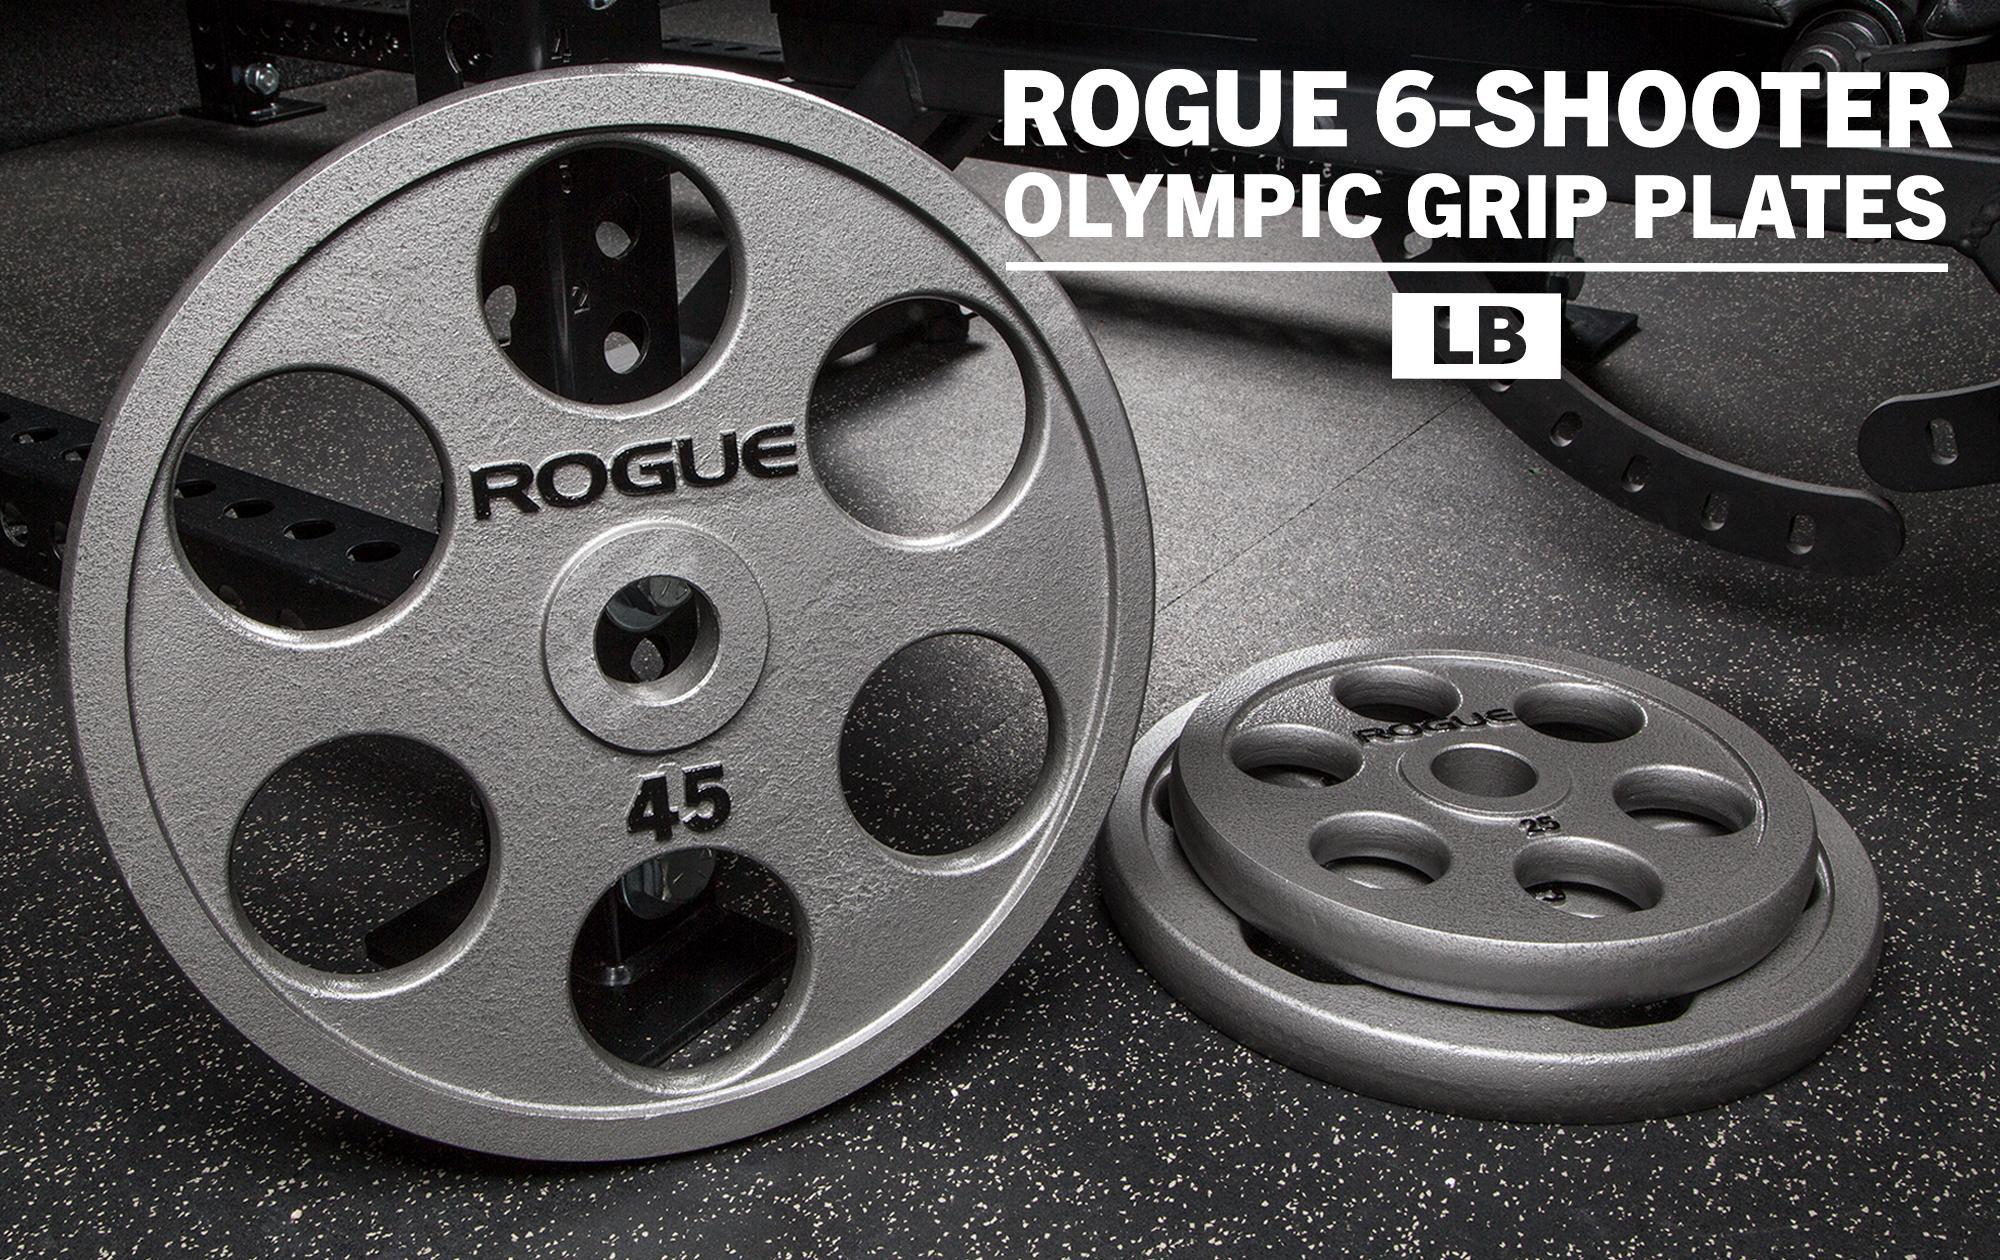 Rogue 6 shooter plates